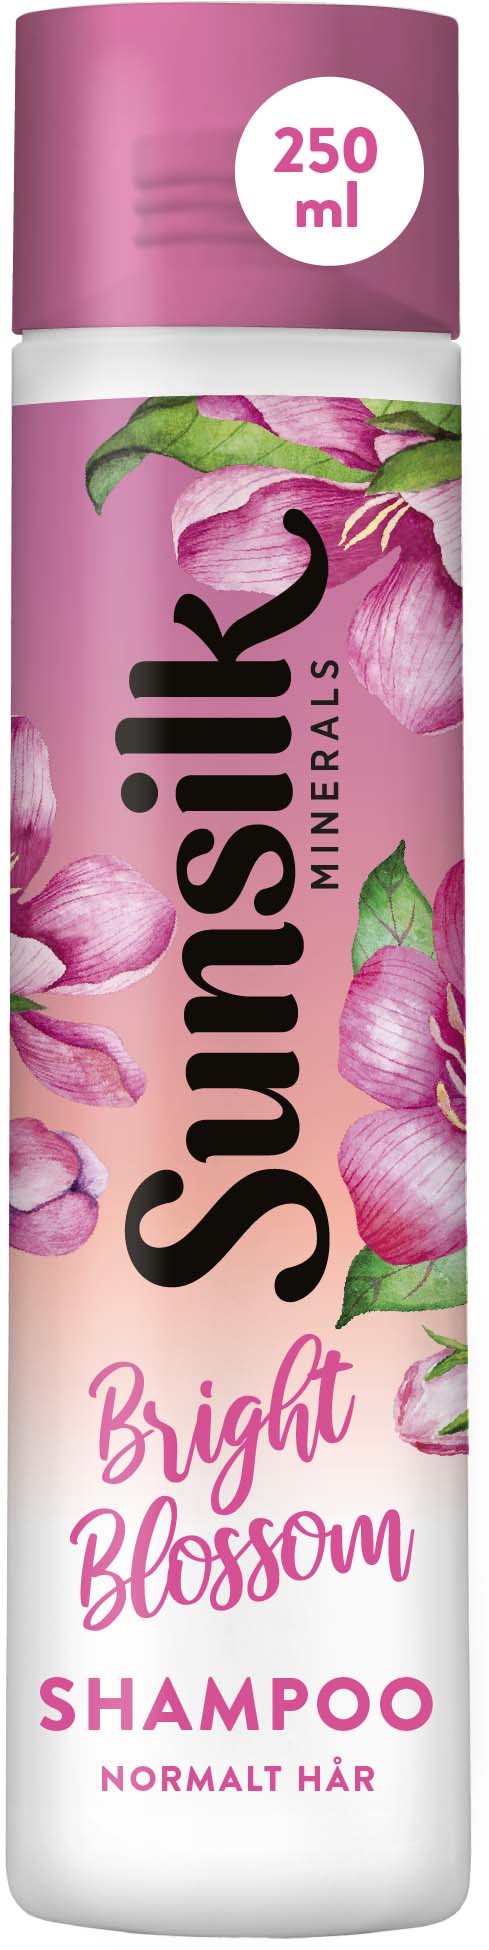 Sunsilk Minerals Blossom Shampoo 250 ml | lyko.com